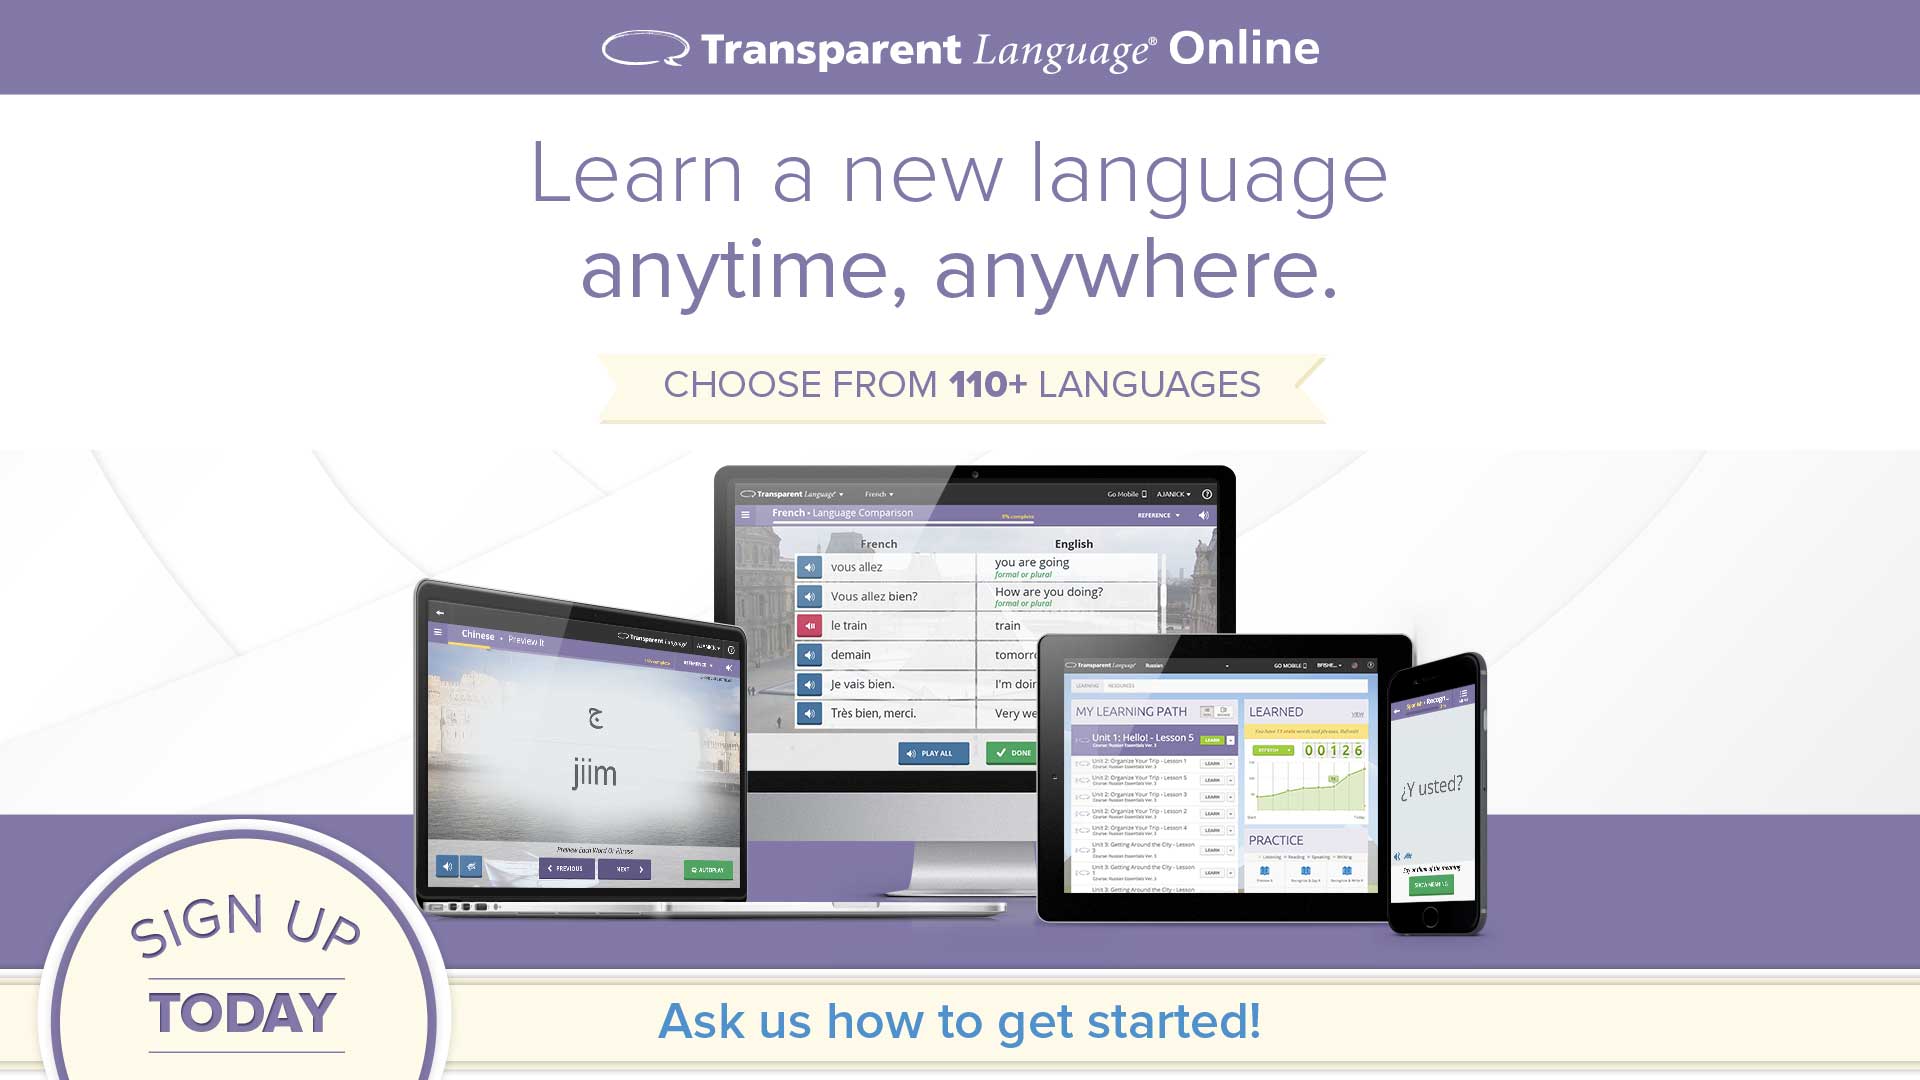 Transparent Language online ad